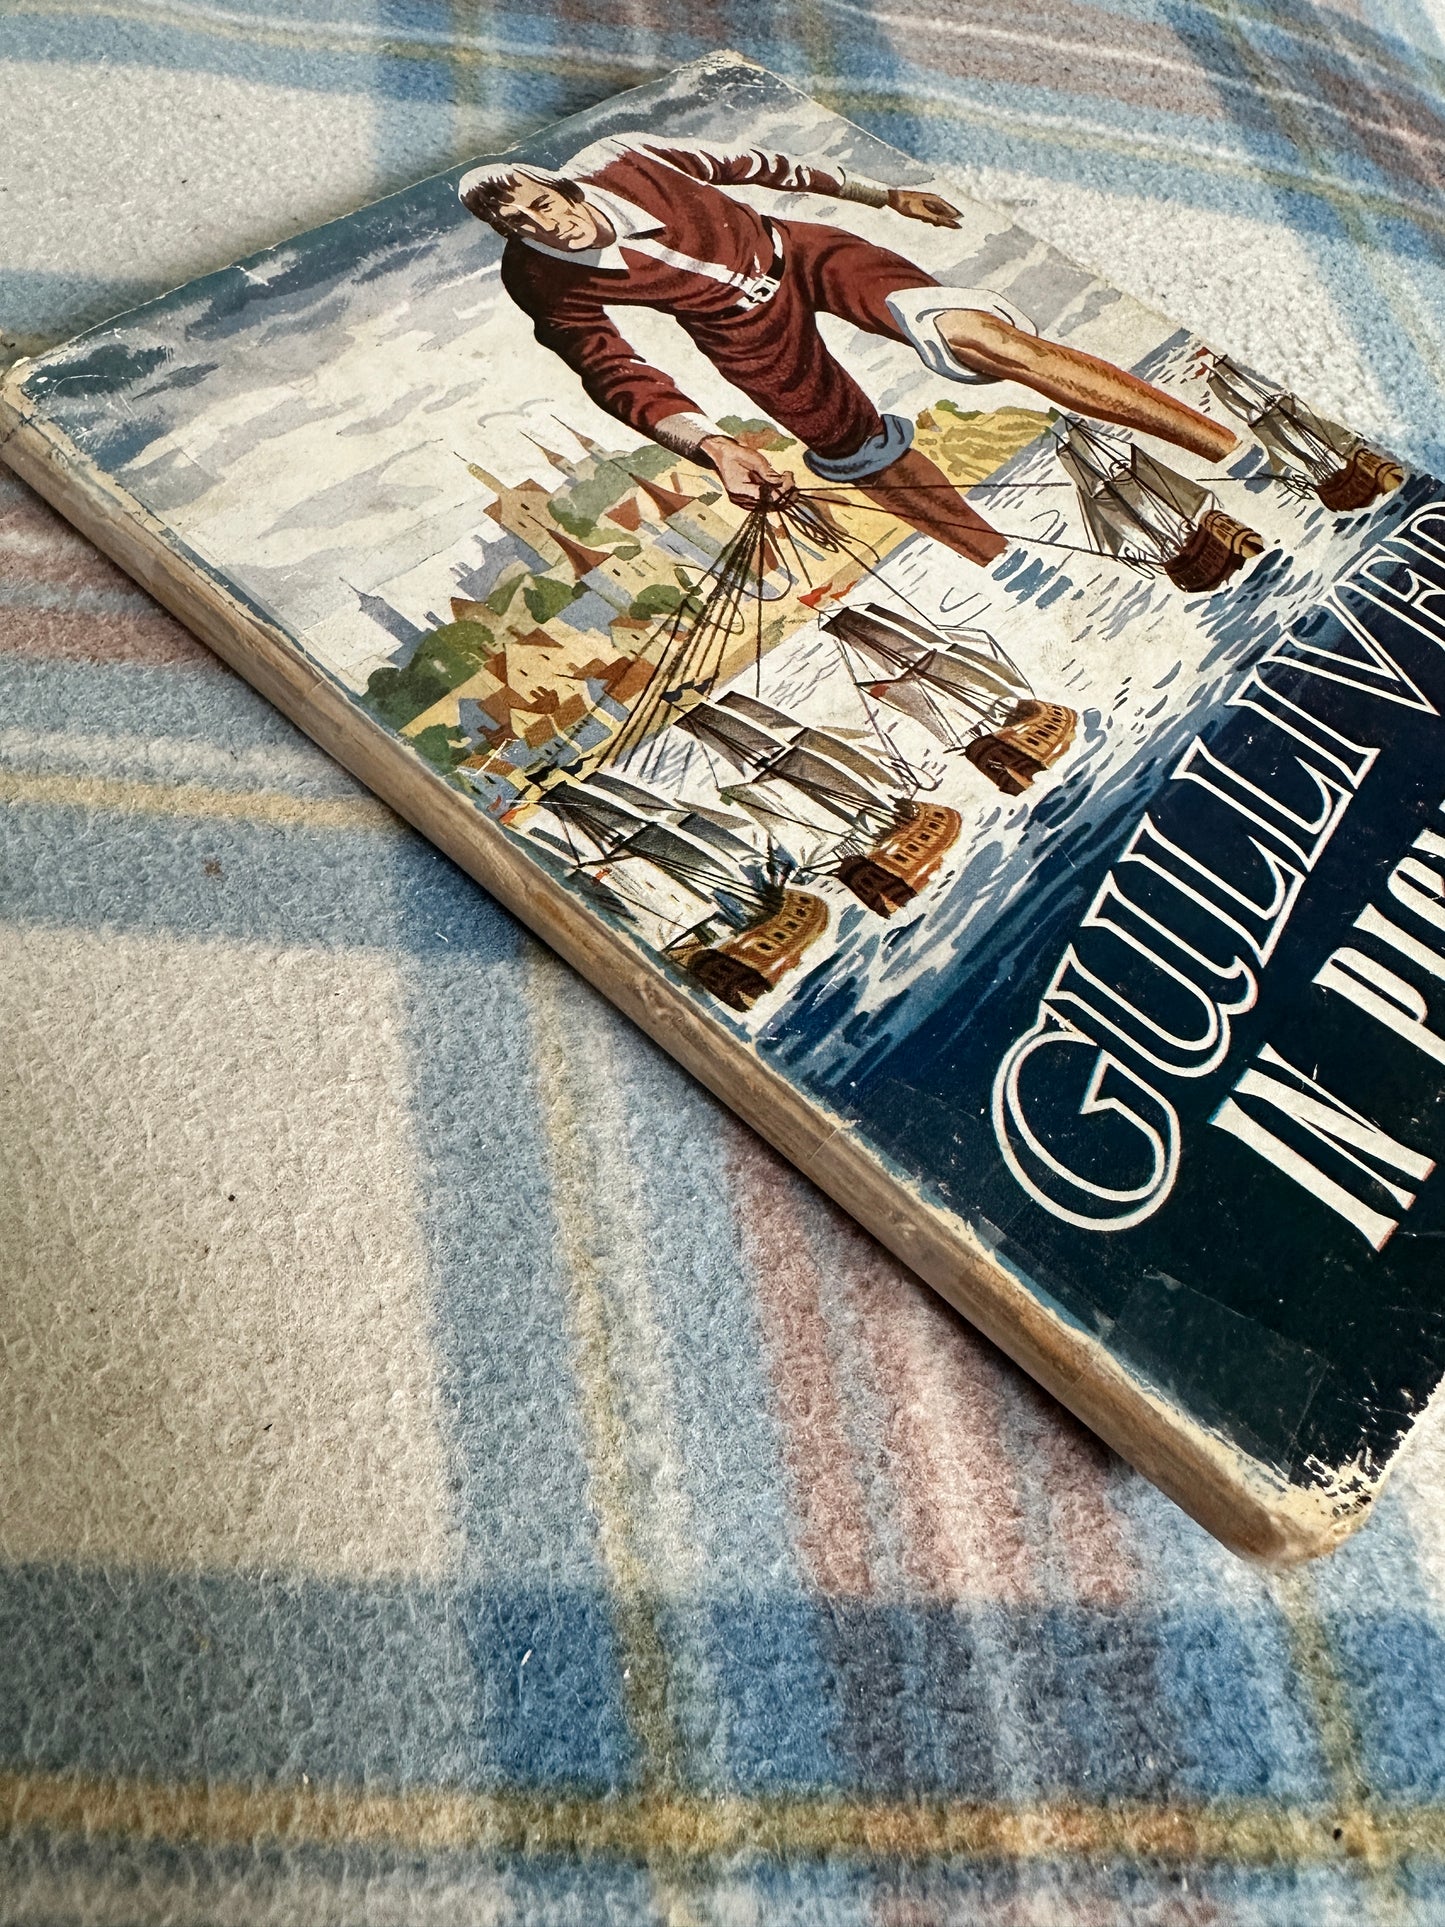 1940’s Gulliver In Pigmyland(Treasure Trove Series) Collins